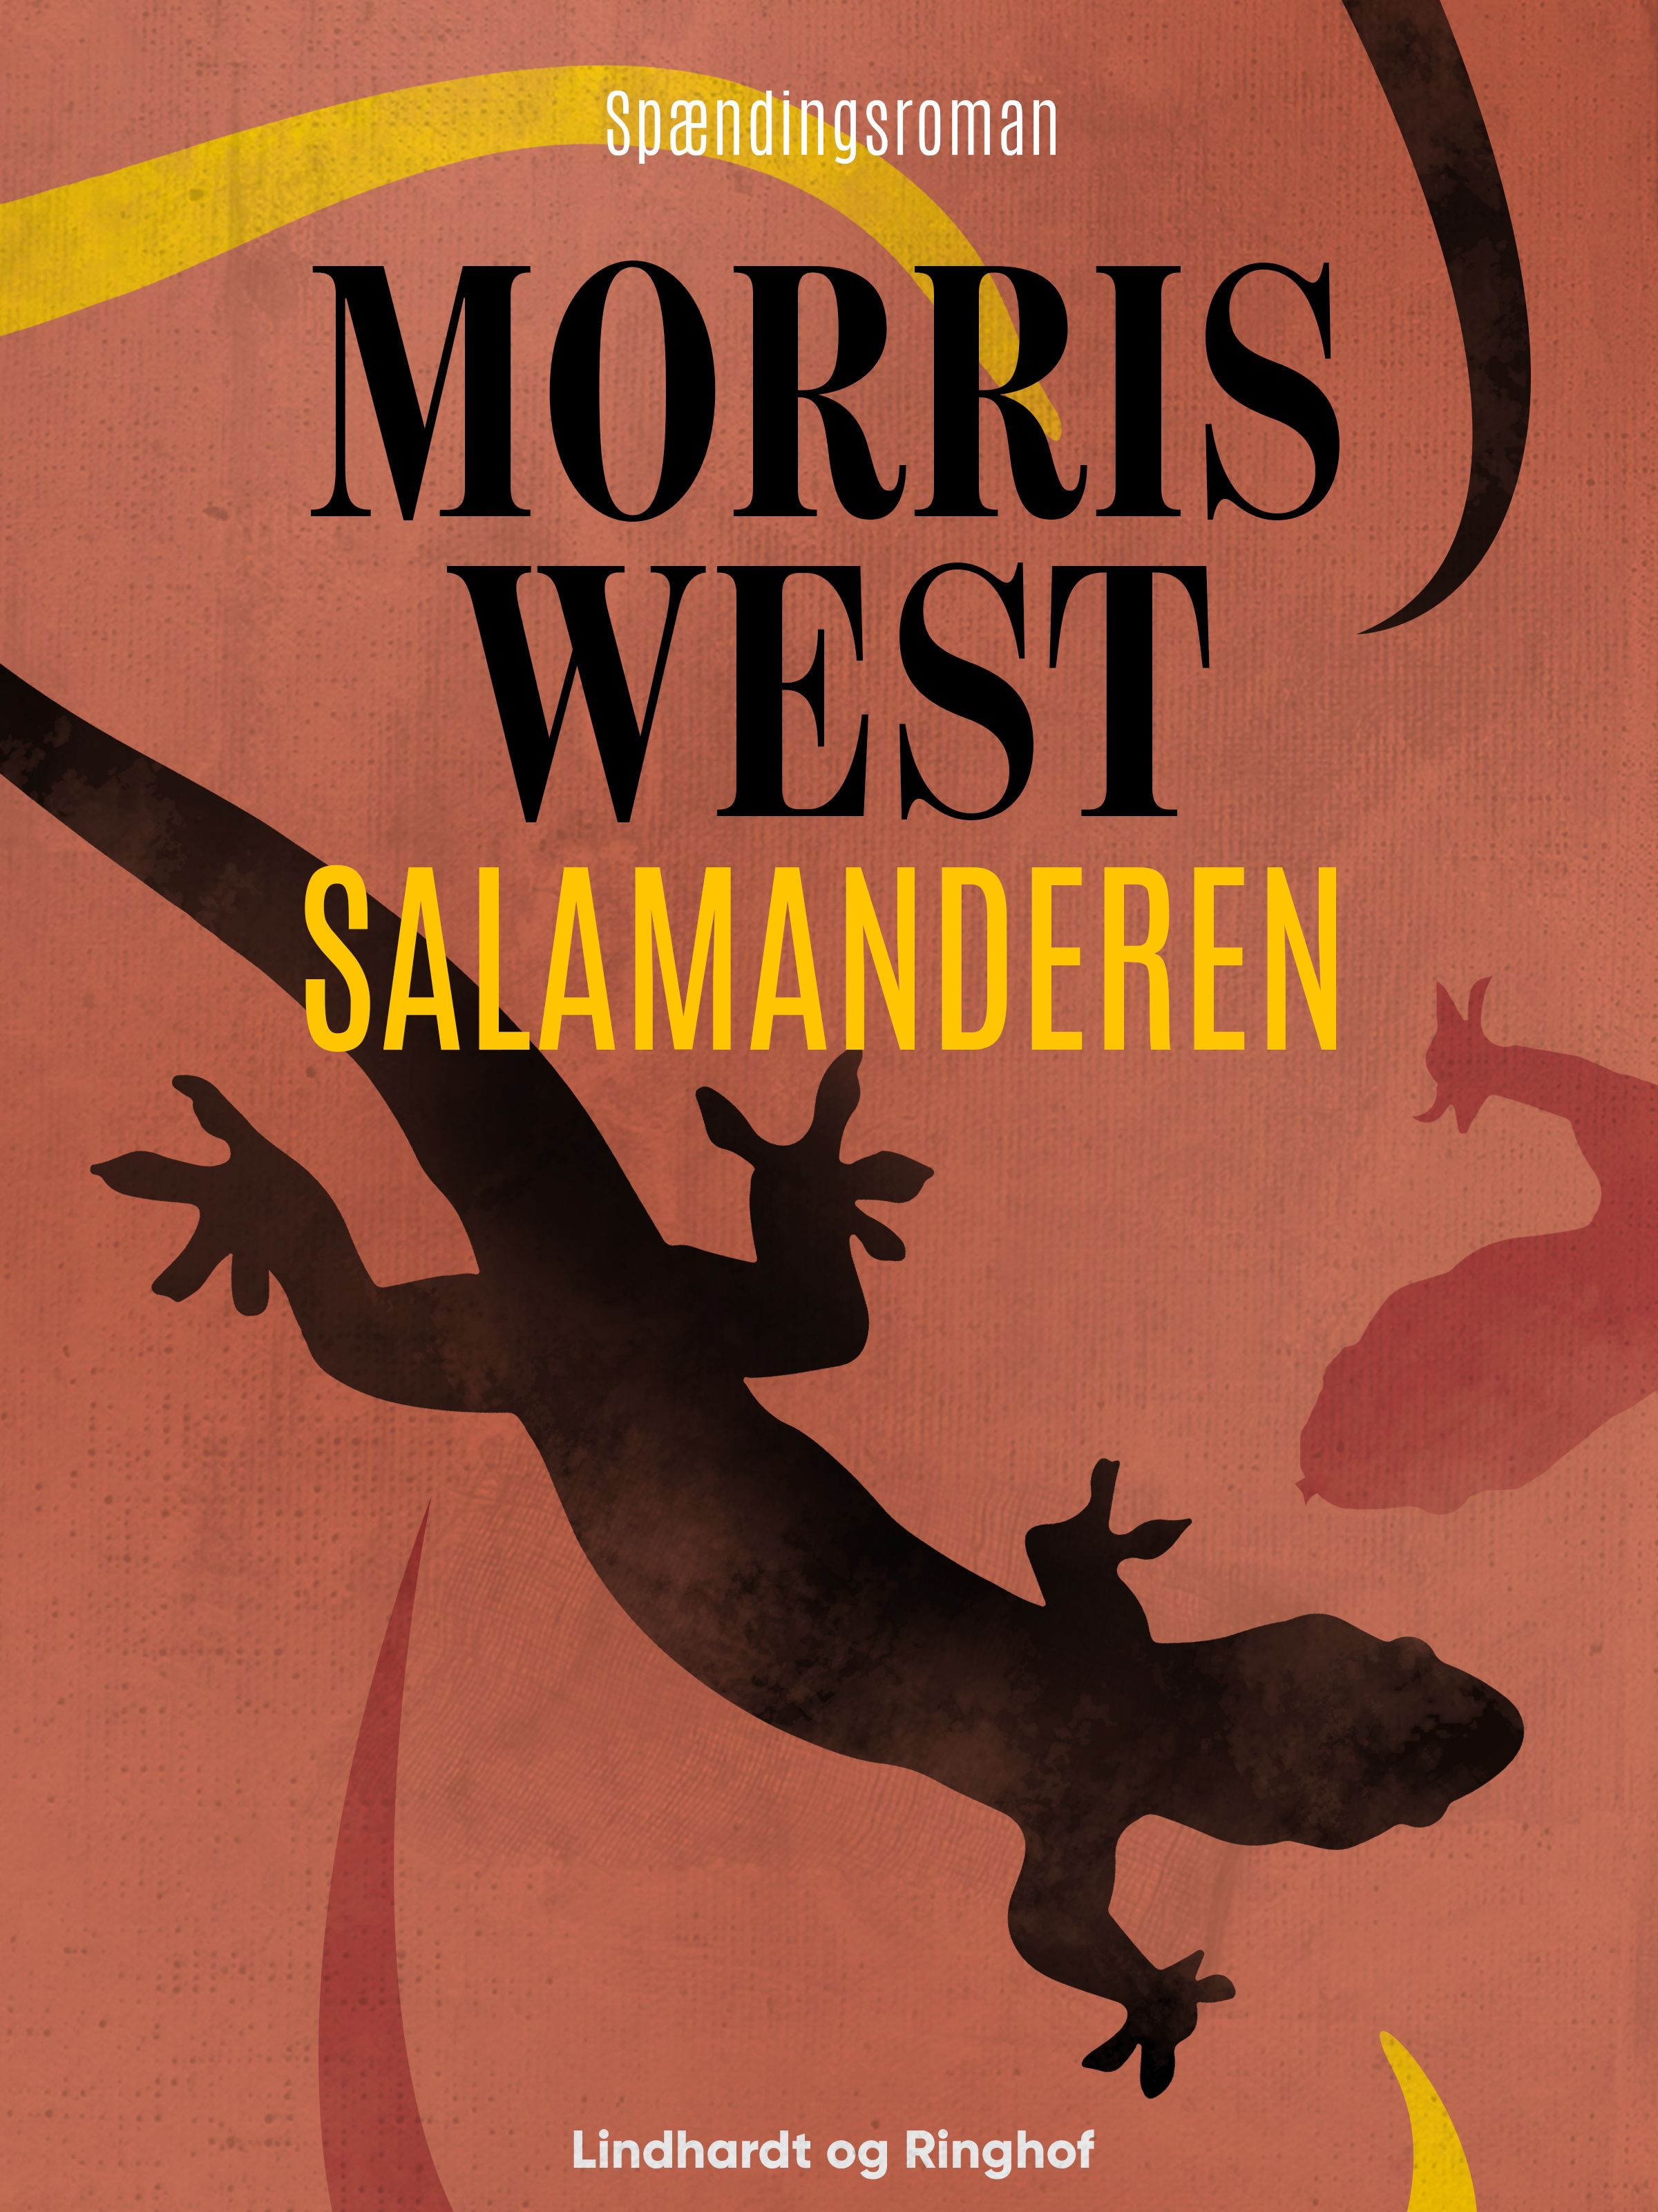 Salamanderen, lydbog af Morris West